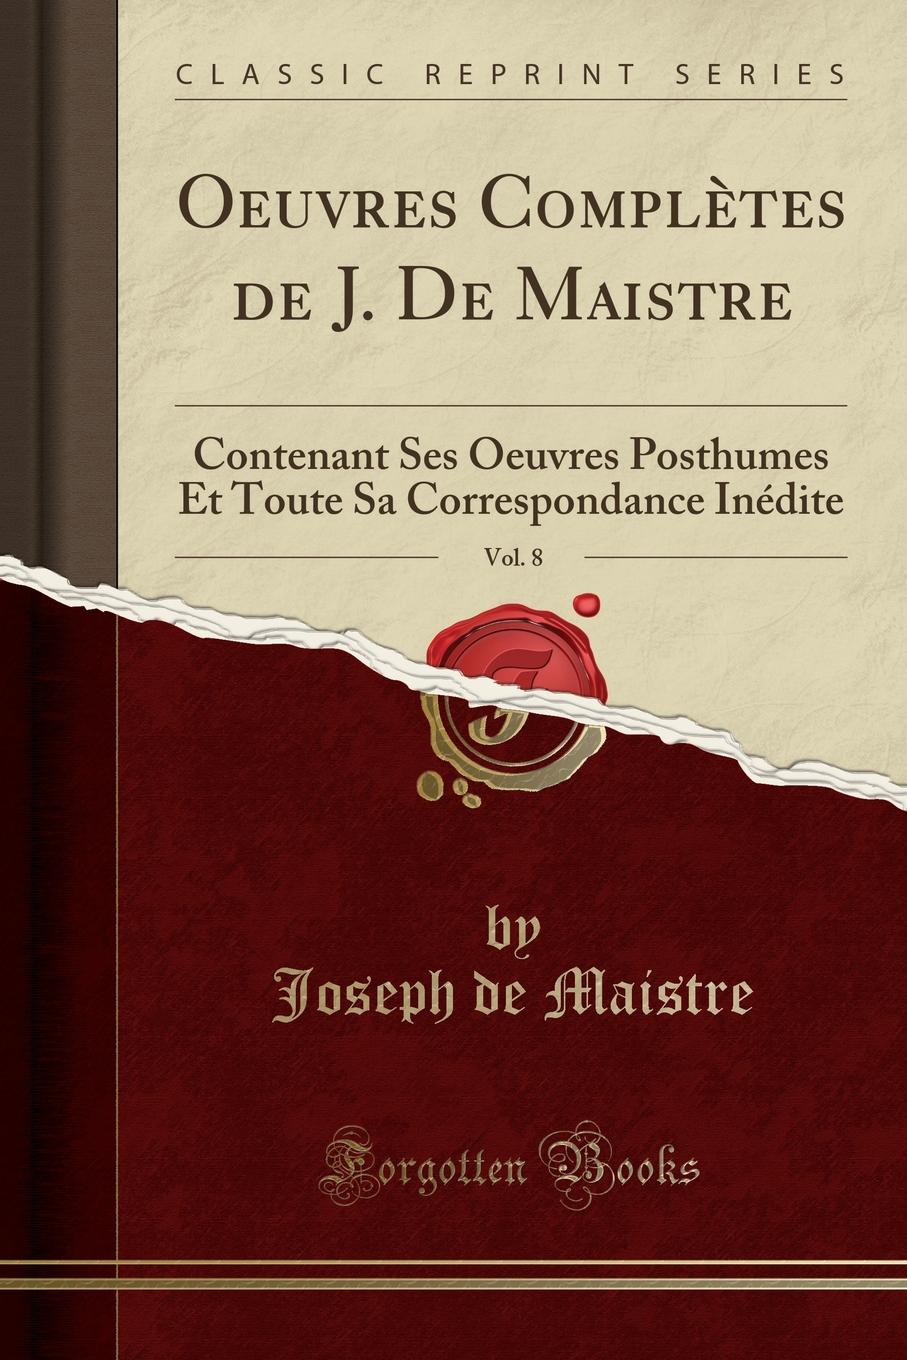 Oeuvres Completes de J. De Maistre, Vol. 8. Contenant Ses Oeuvres Posthumes Et Toute Sa Correspondance Inedite (Classic Reprint)